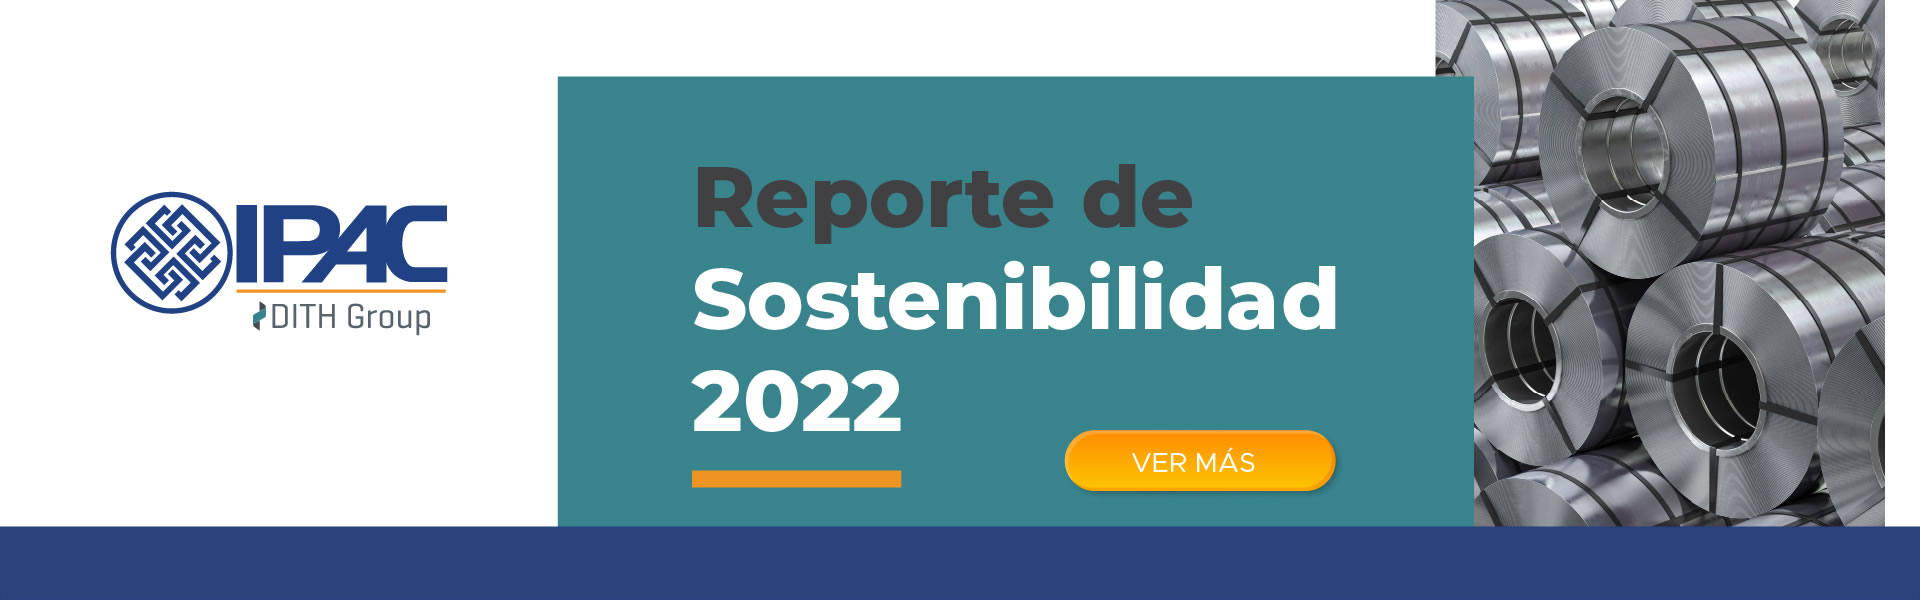 Banner Reporte Sostenibilidad 2022